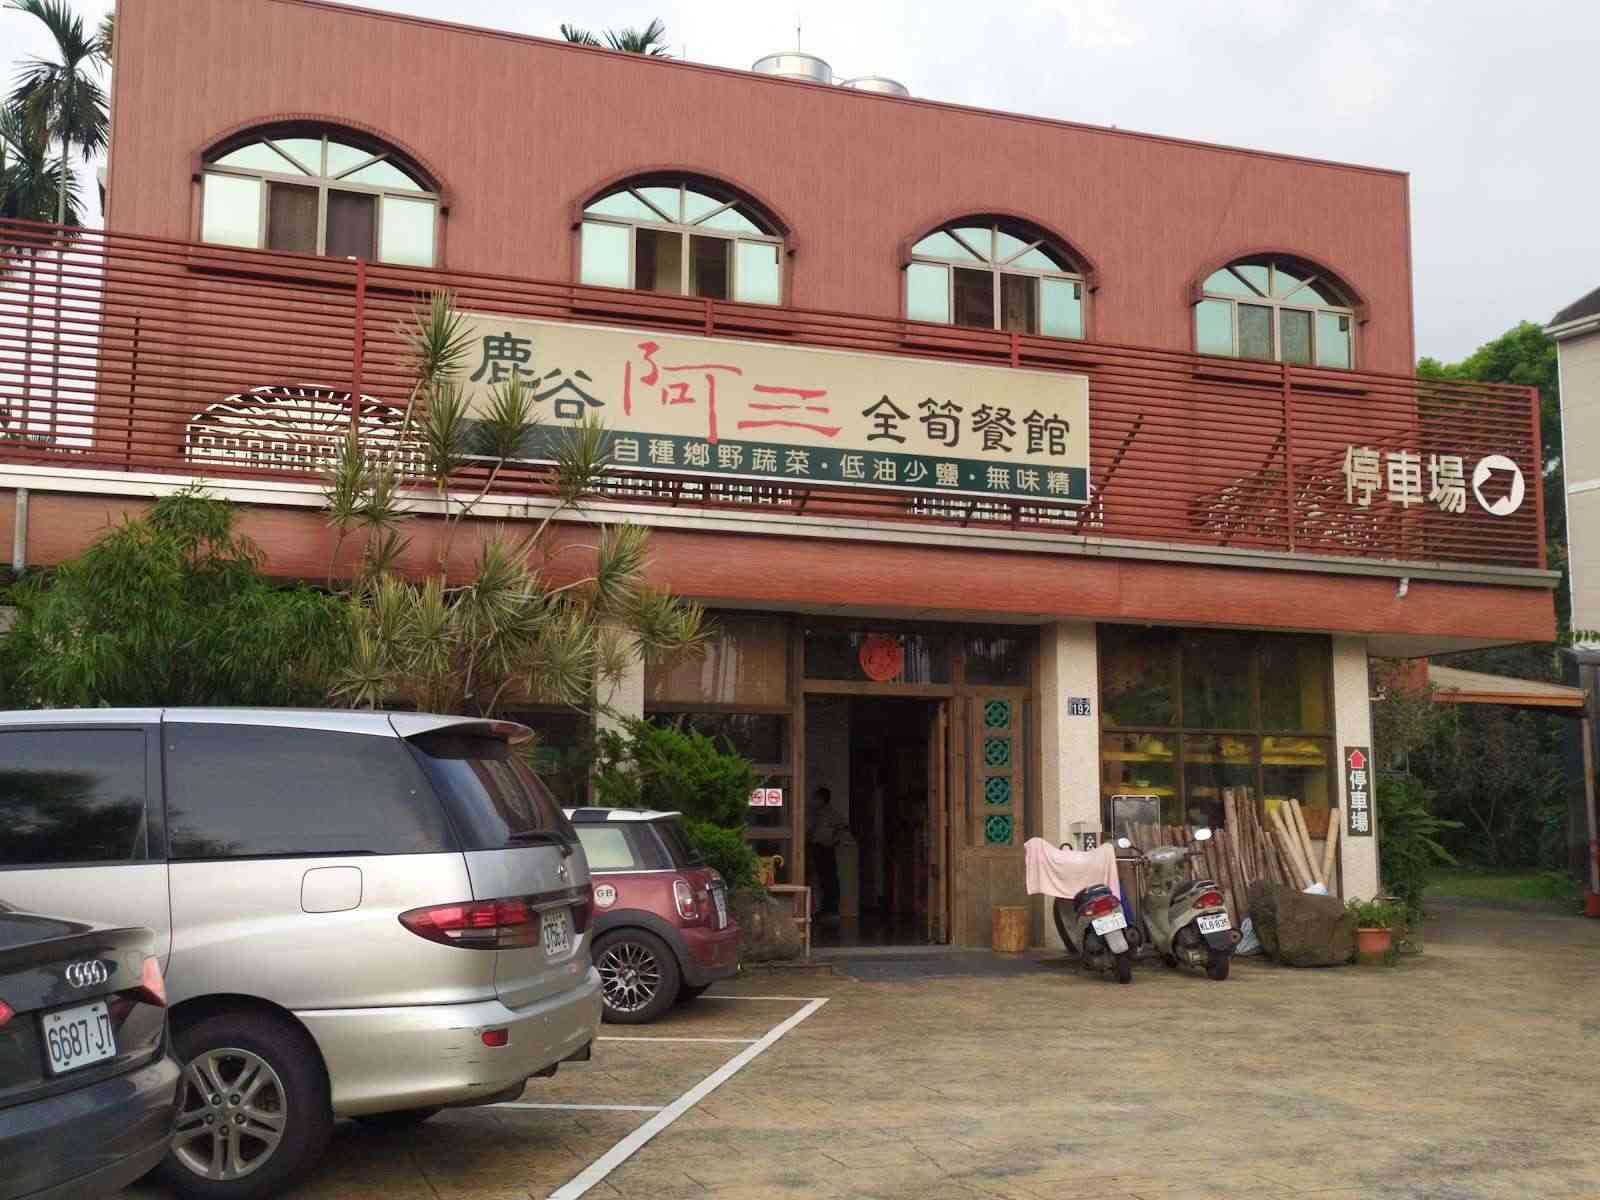 鹿谷阿三全筍餐館/ 攝影者: 張凱婷

(由第三方資訊提供)